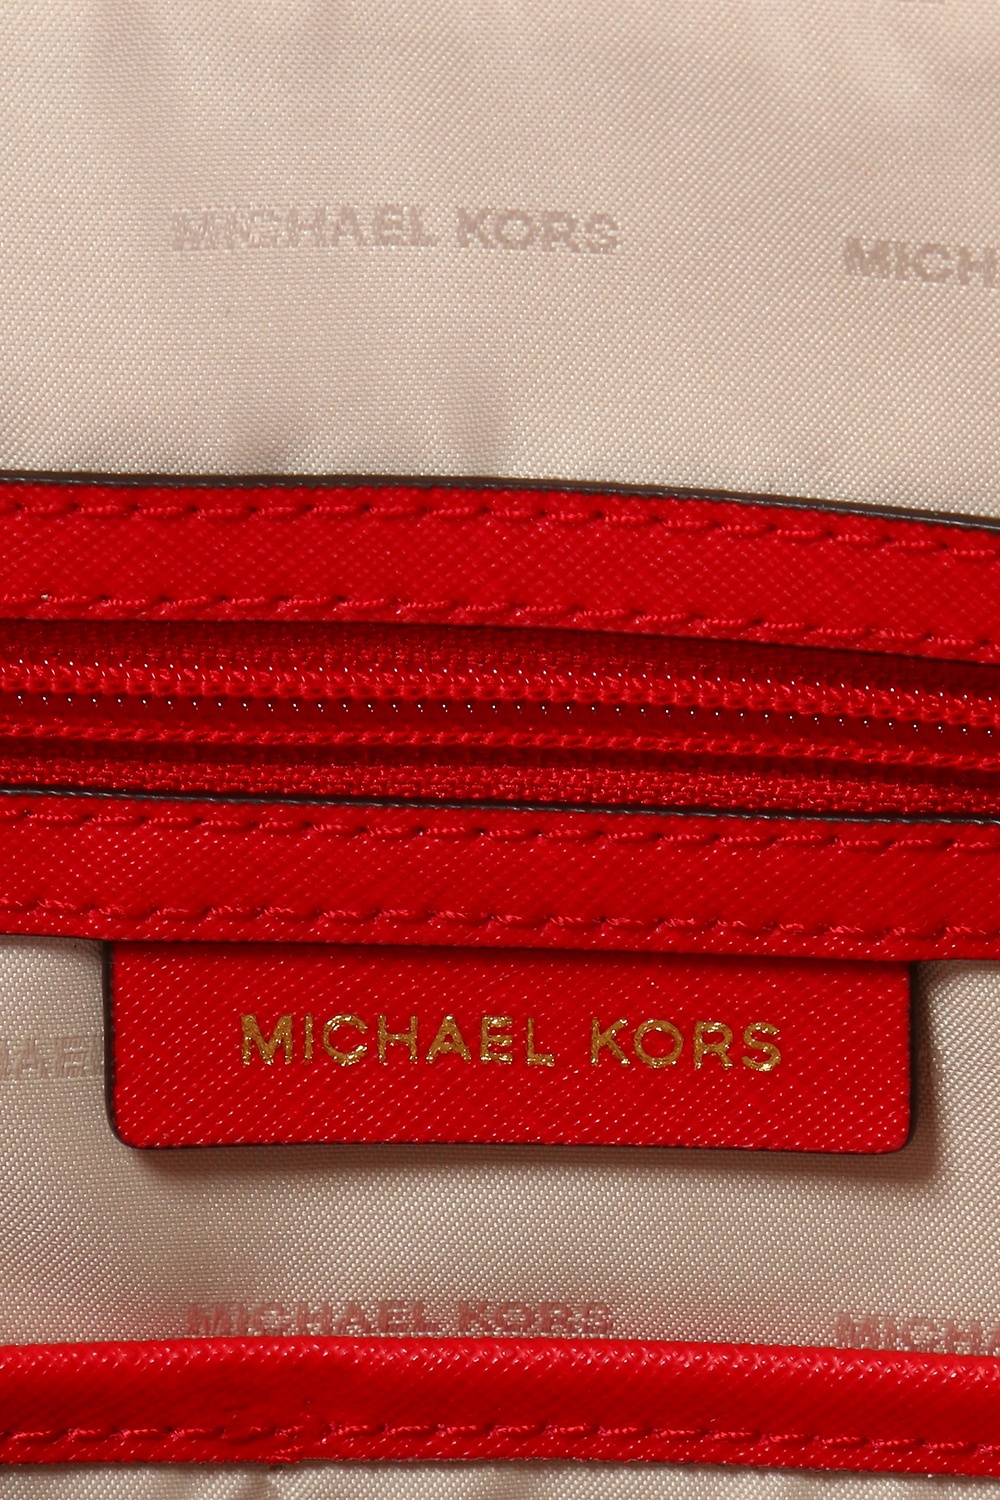 Michael Kors Jet Set Saffiano Leather Tote -Soft Pink 30F2GTTT8L